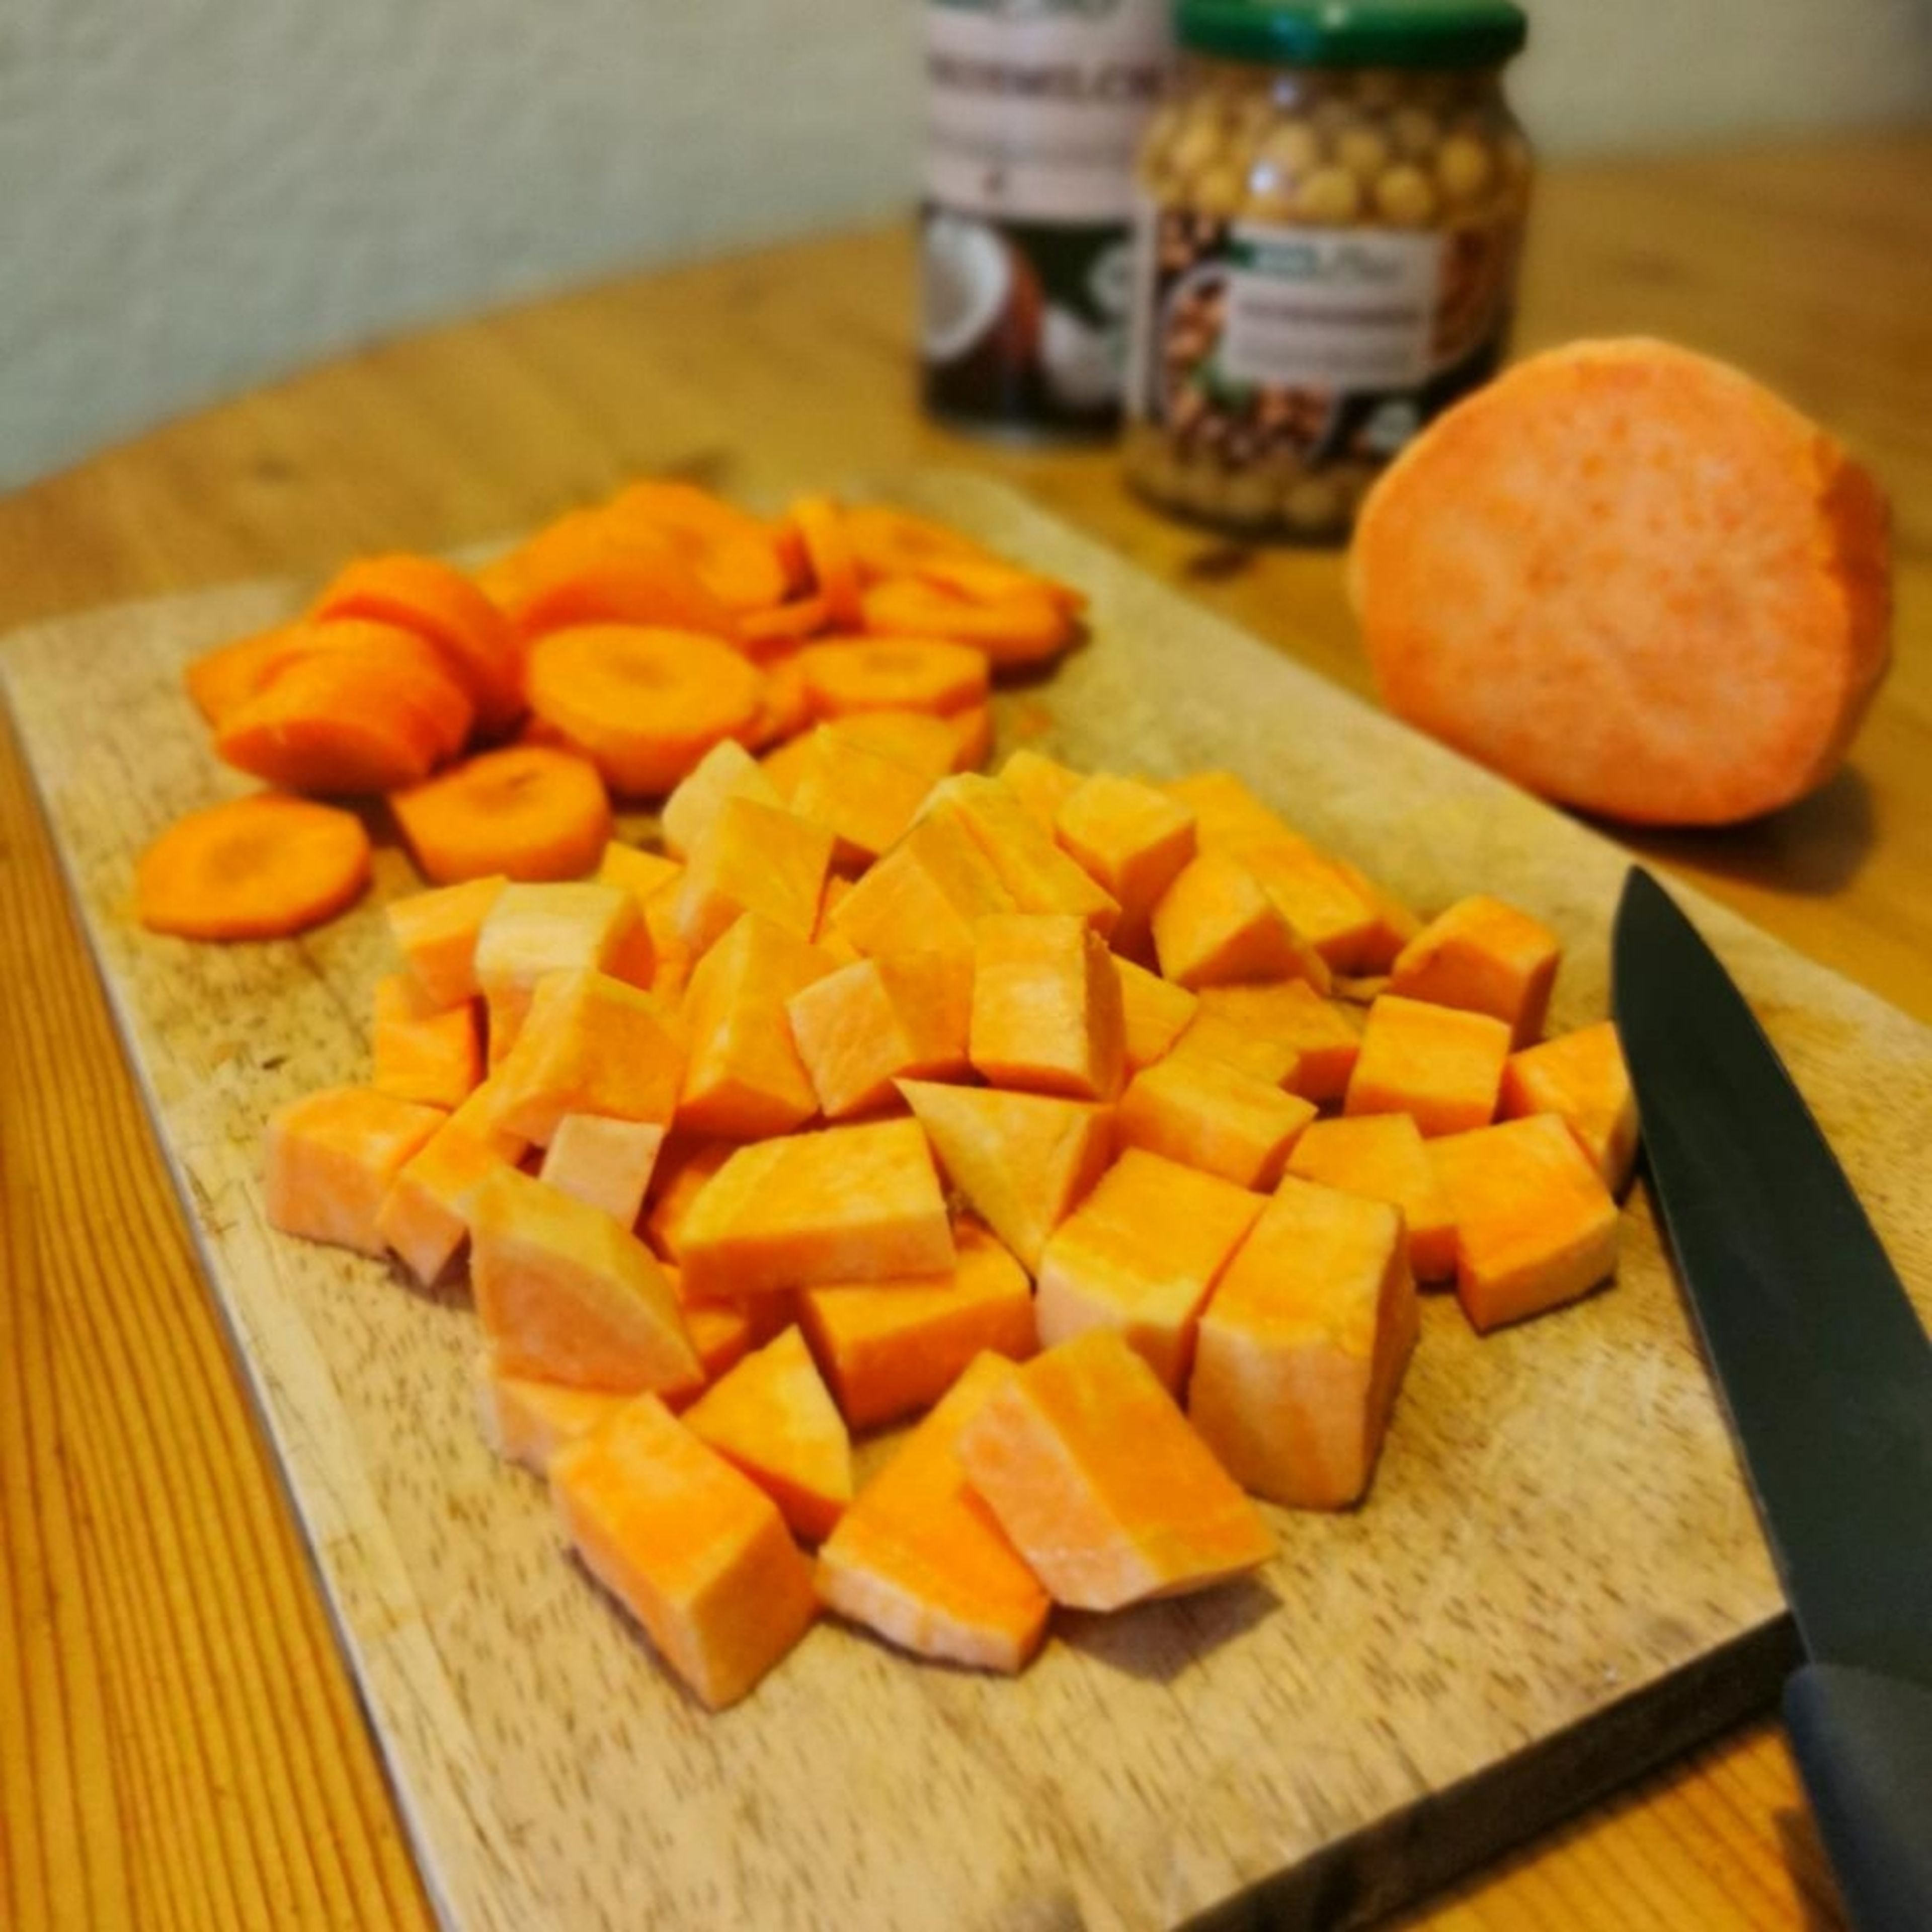 Die Karotten schälen und in Scheiben schneiden. Die Karotten in den Topf geben und 2-3 Minuten anschwitzen. InDder Zeit die Süßkartoffel schälen und in Würfel schneiden, danach kannst du sie ebenfalls in den Topf geben. Mit ein bisschen Brühe ablöschen und zusammen nochmal 5 Minuten garen lassen. Danach Restliche Brühe hinzufügen. Gewürze können individuell und nach Belieben hinzugeben werden und 10 - 15 Minuten köcheln lassen.